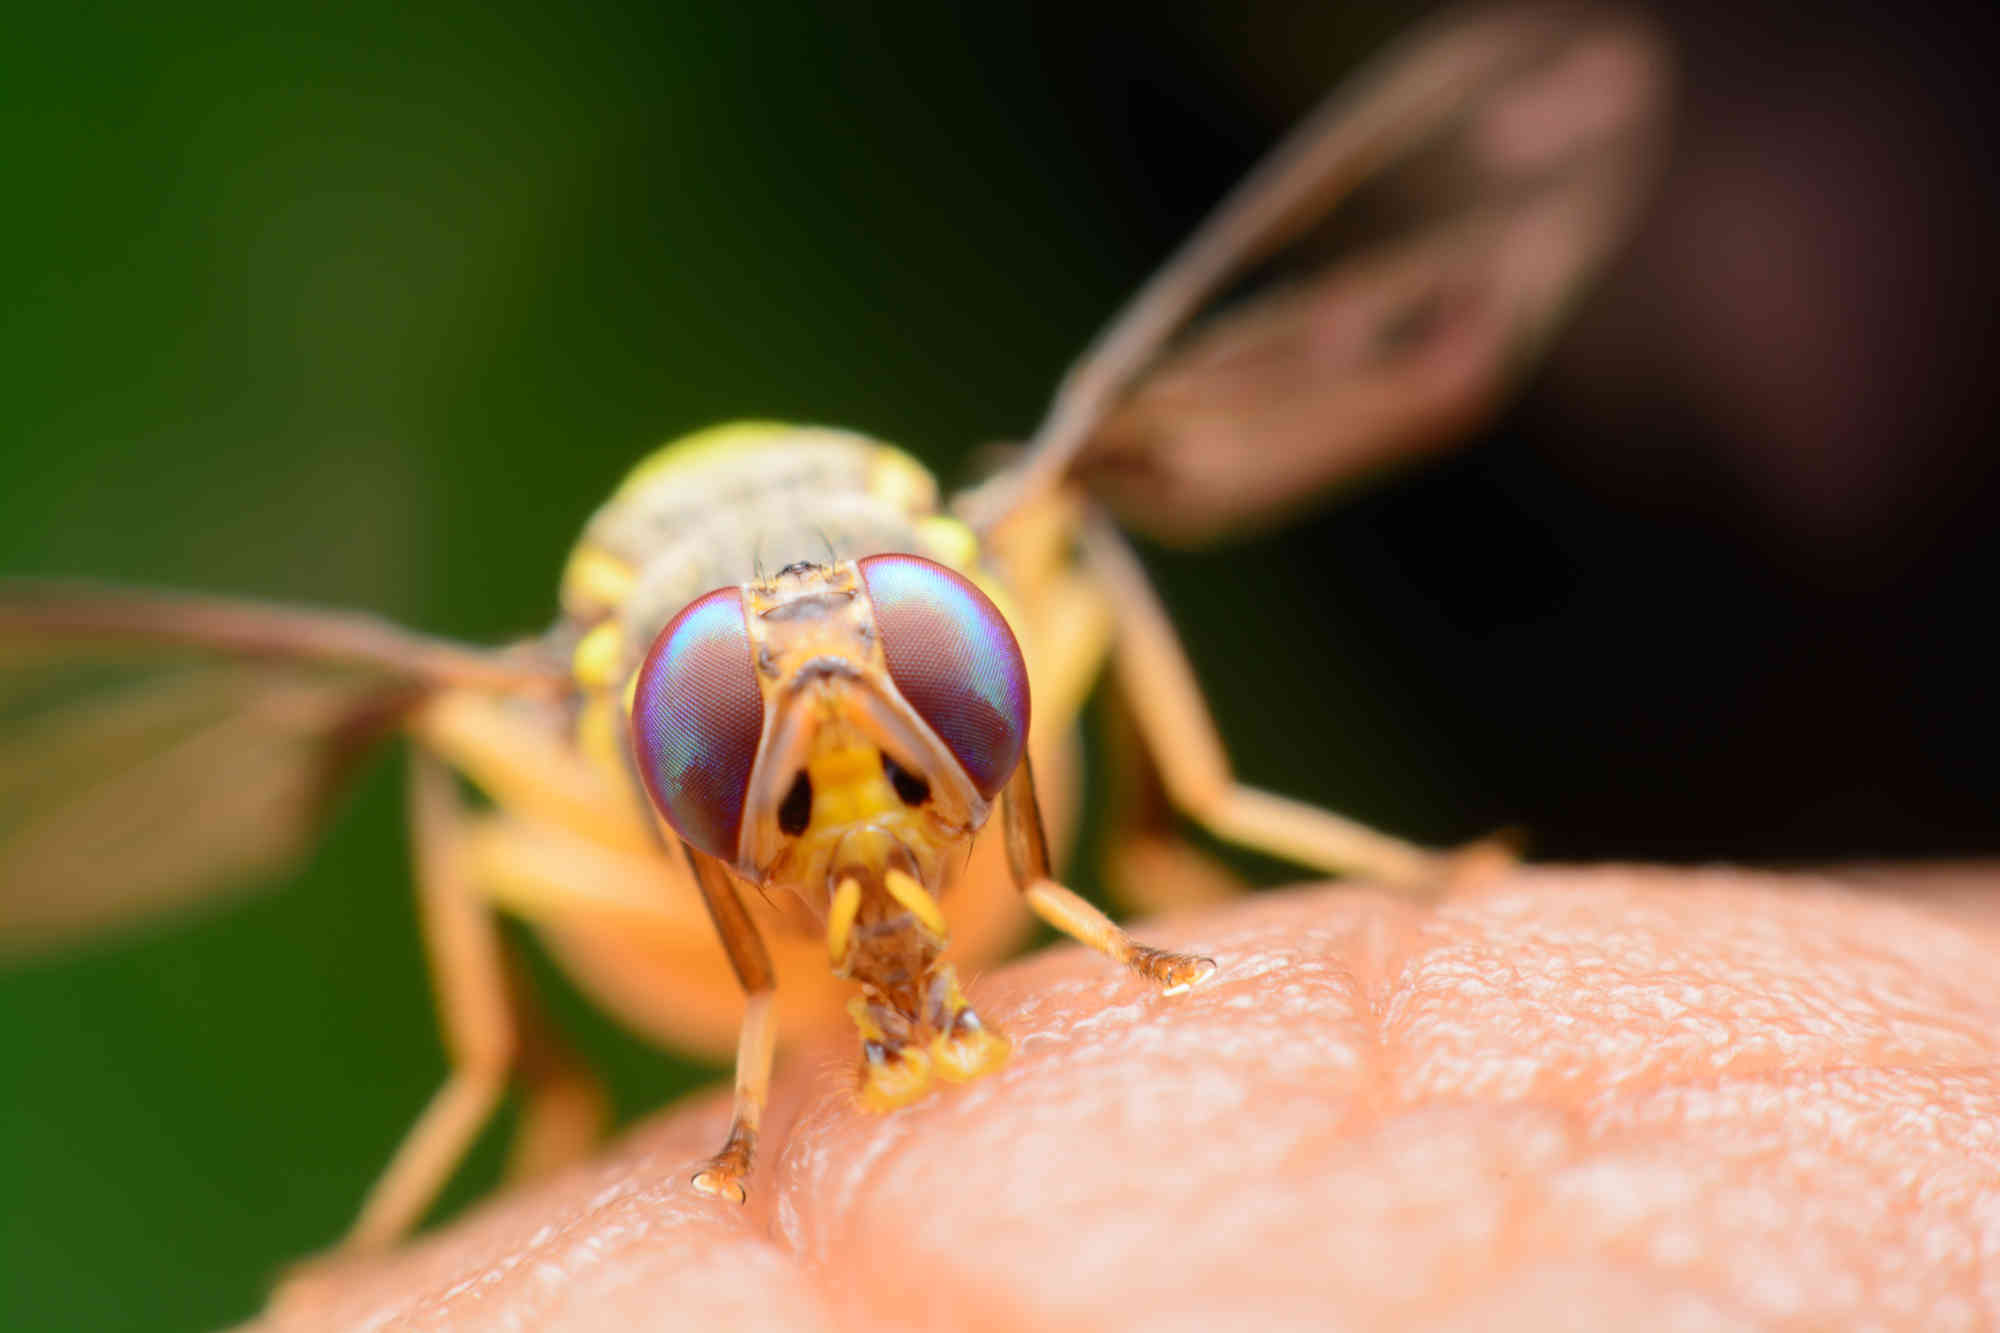 Drosophila Melanogaster